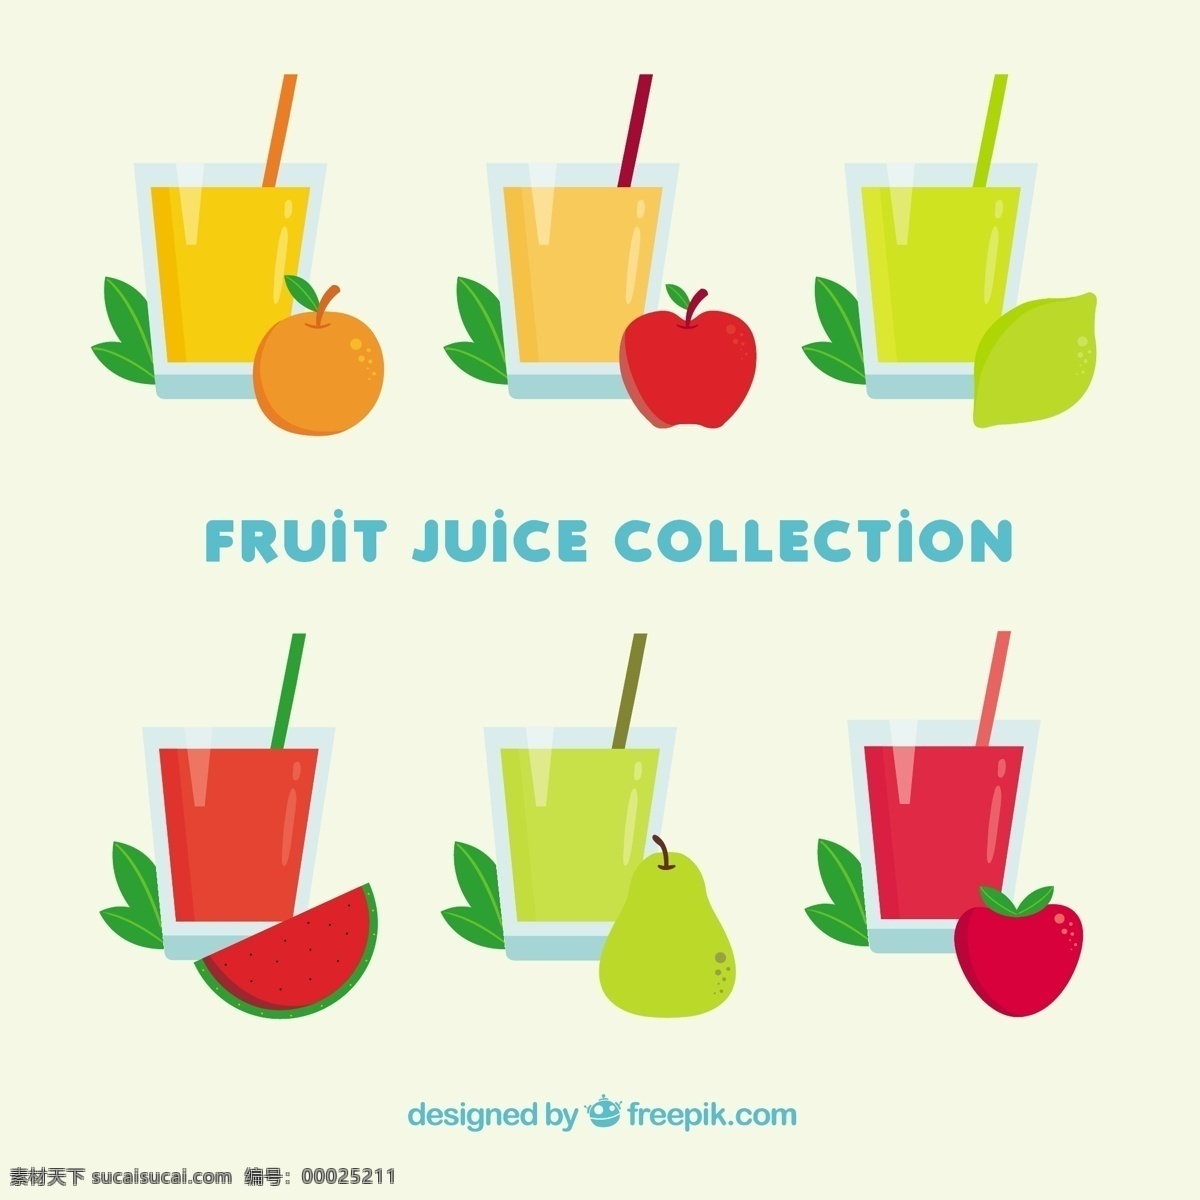 各色果汁 食品 夏季 水果 颜色 橙子 苹果 平板 饮料 果汁 天然 健康 平面设计 草莓 柠檬 吃 健康食品 西瓜 饮食